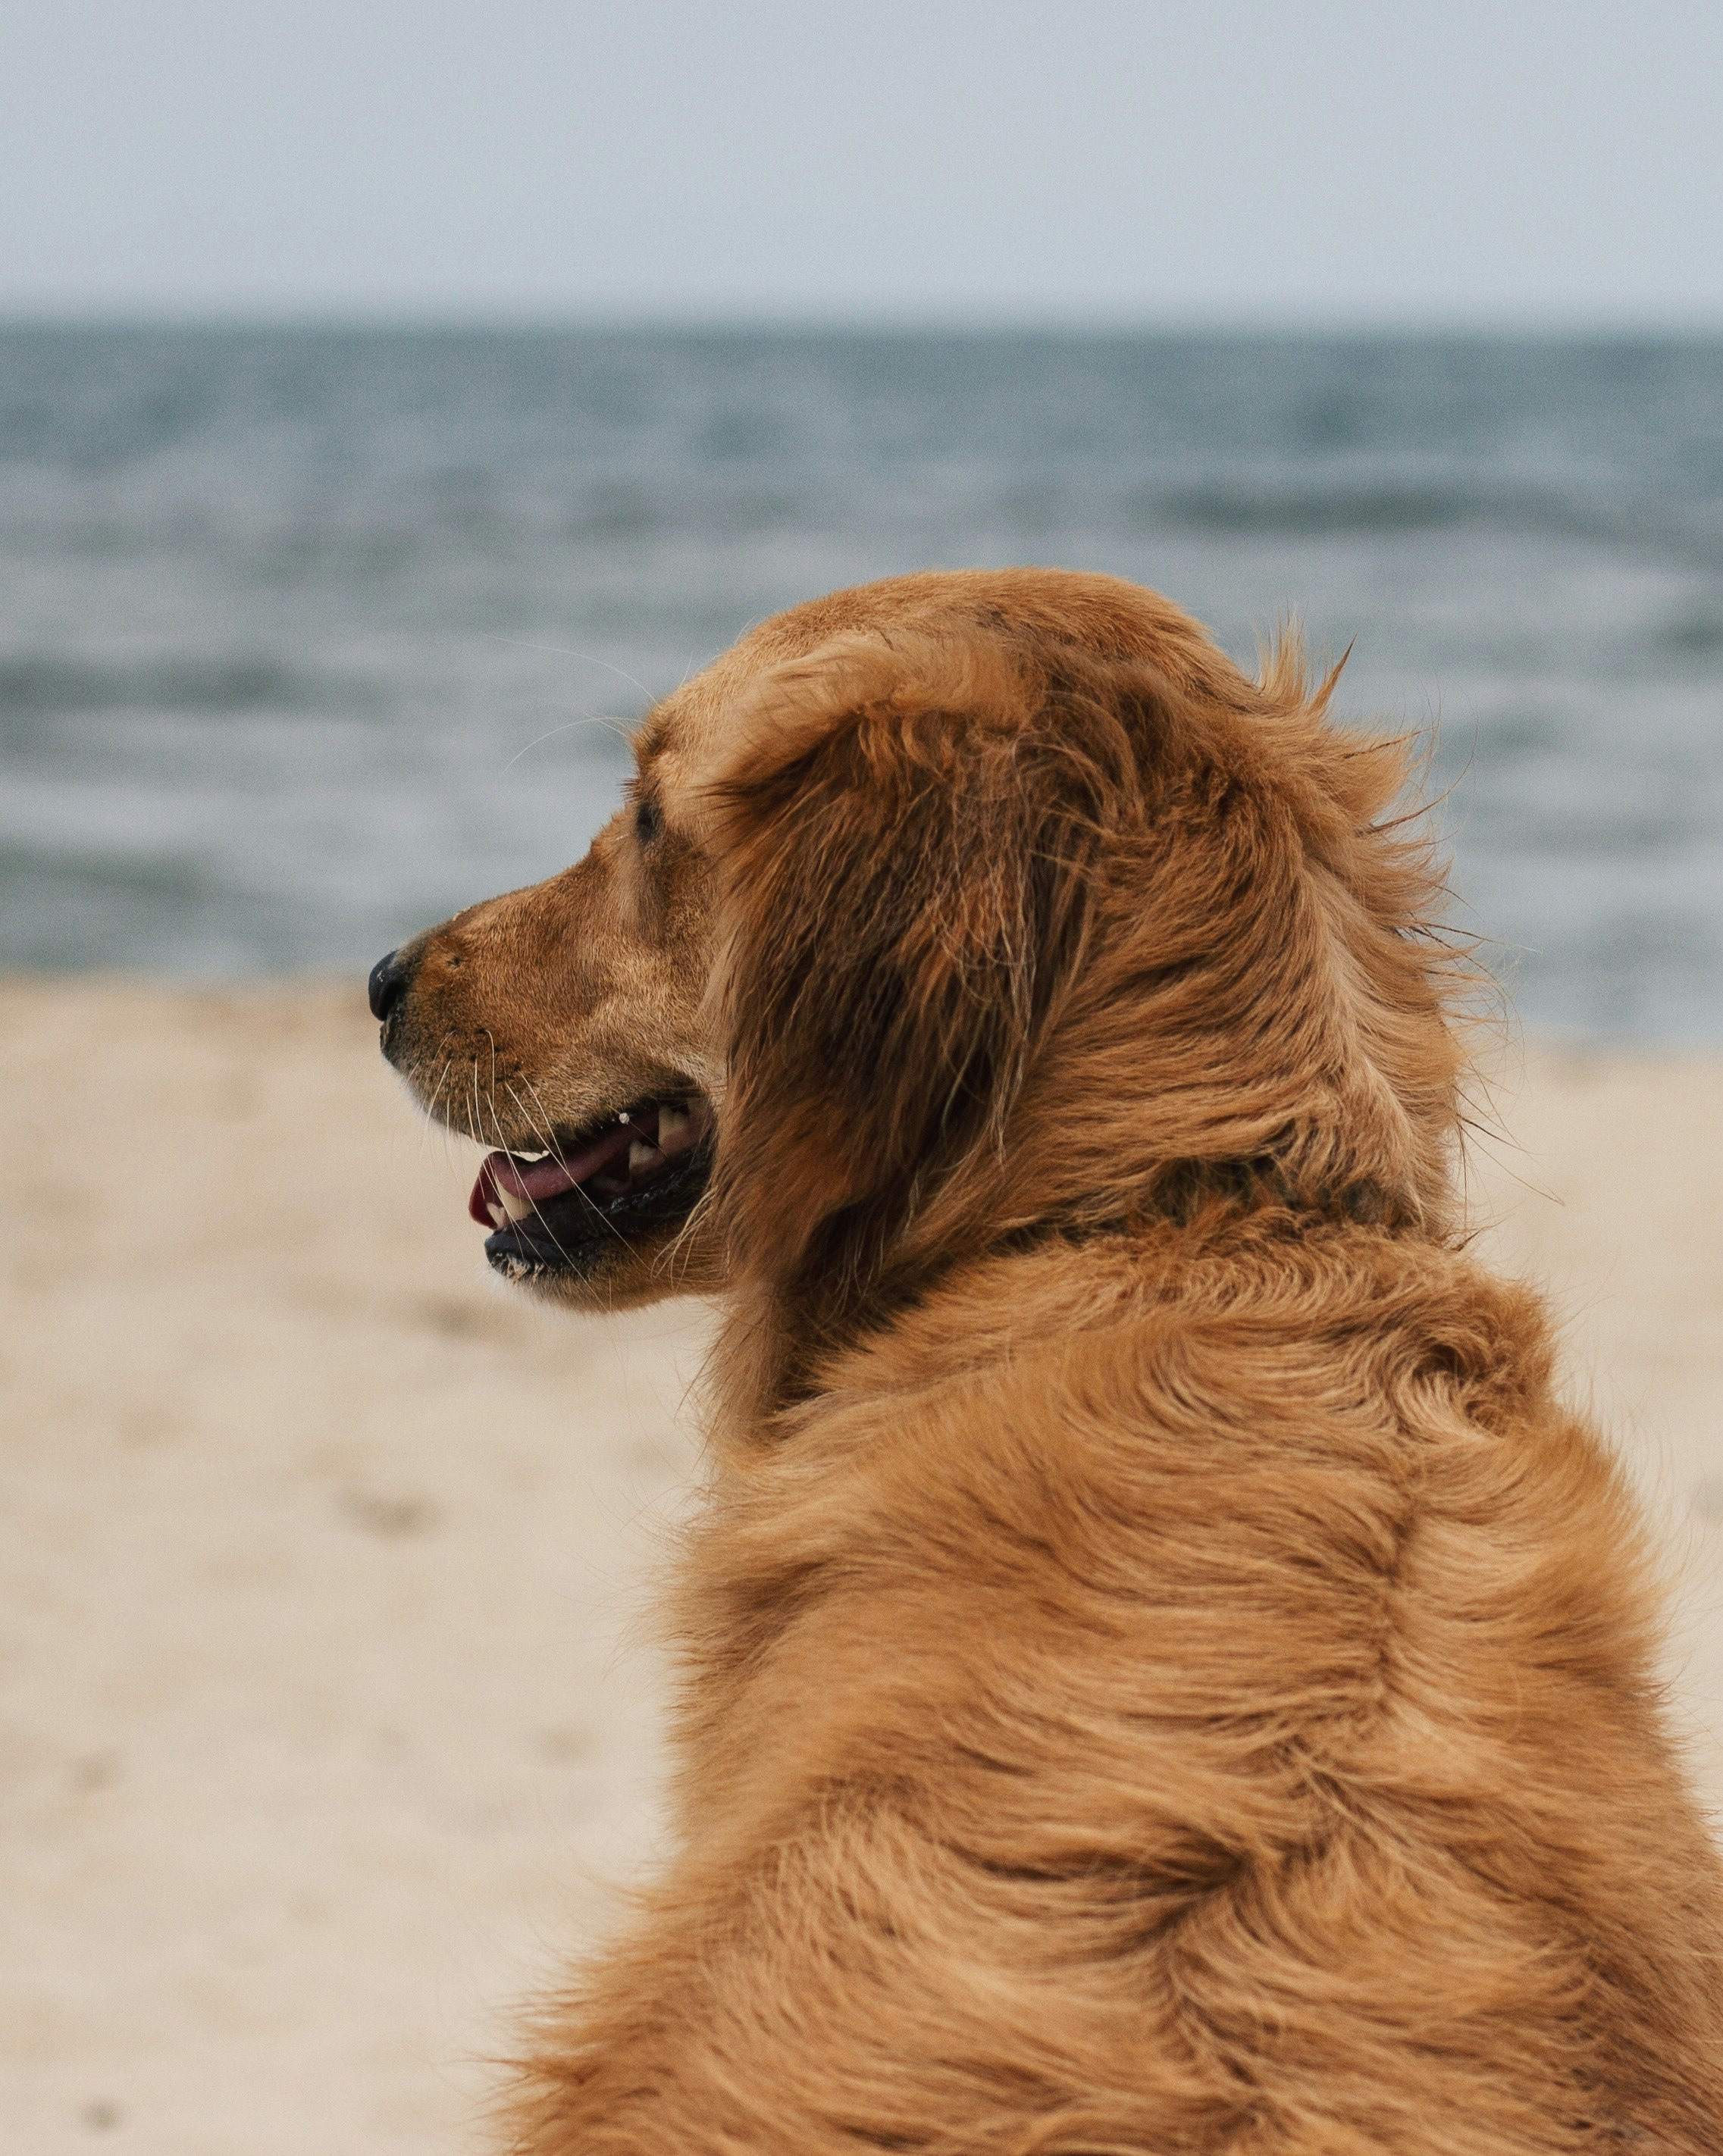 Beach dog, loving life.